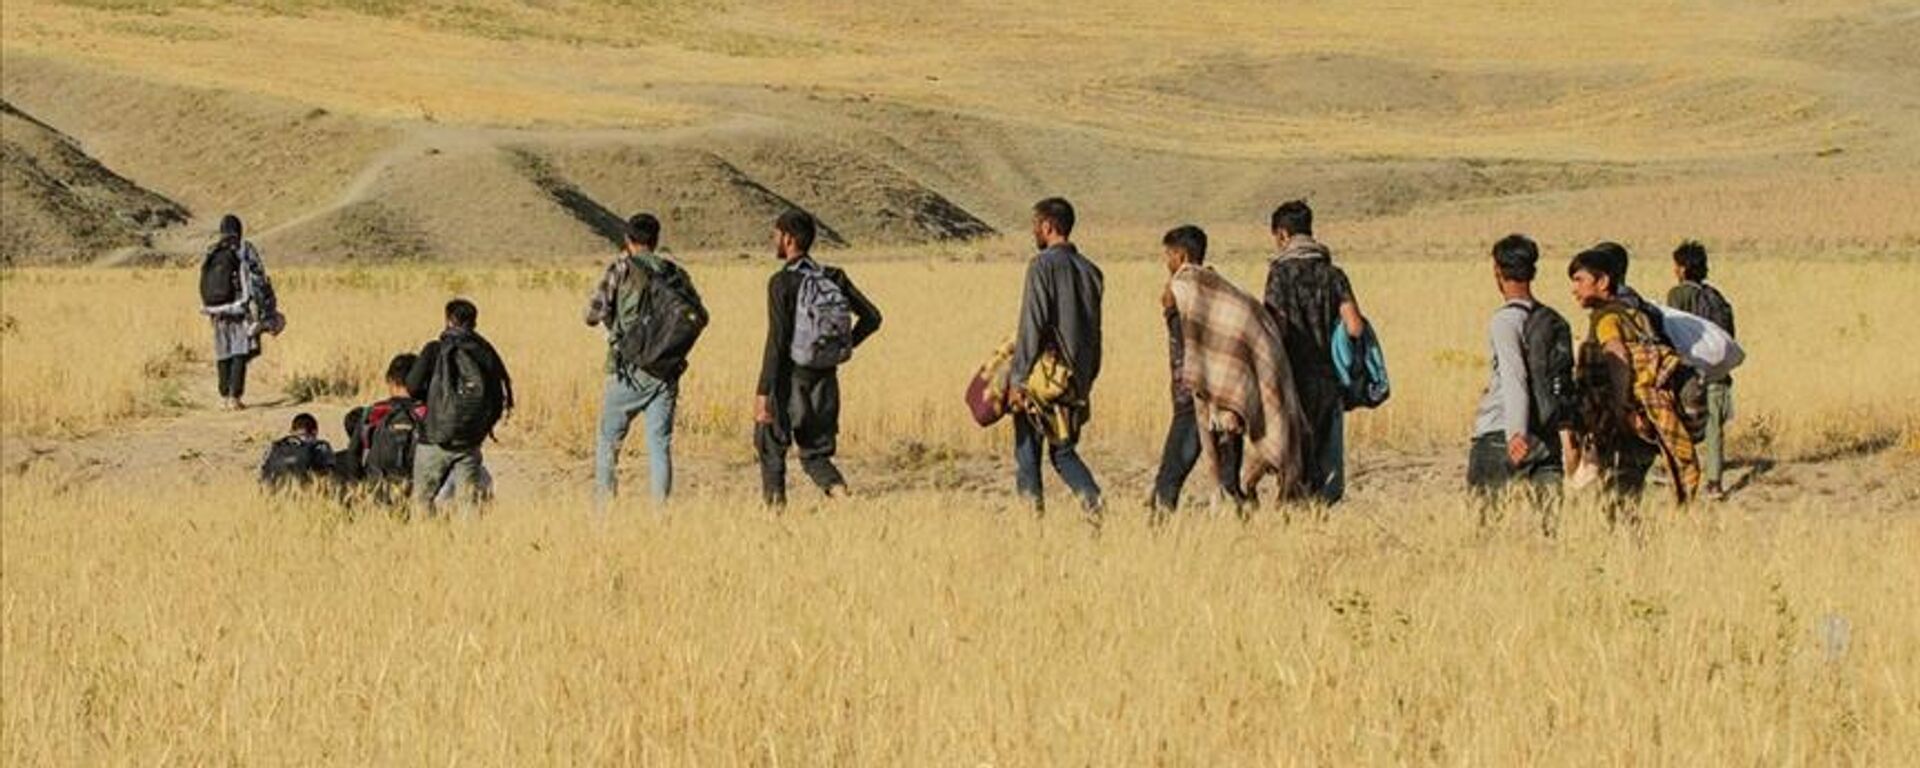 Afganistan'da Taliban dönemi | İran Afgan mültecilerin ülkeye girişini engelleyecek - Sputnik Türkiye, 1920, 01.09.2021